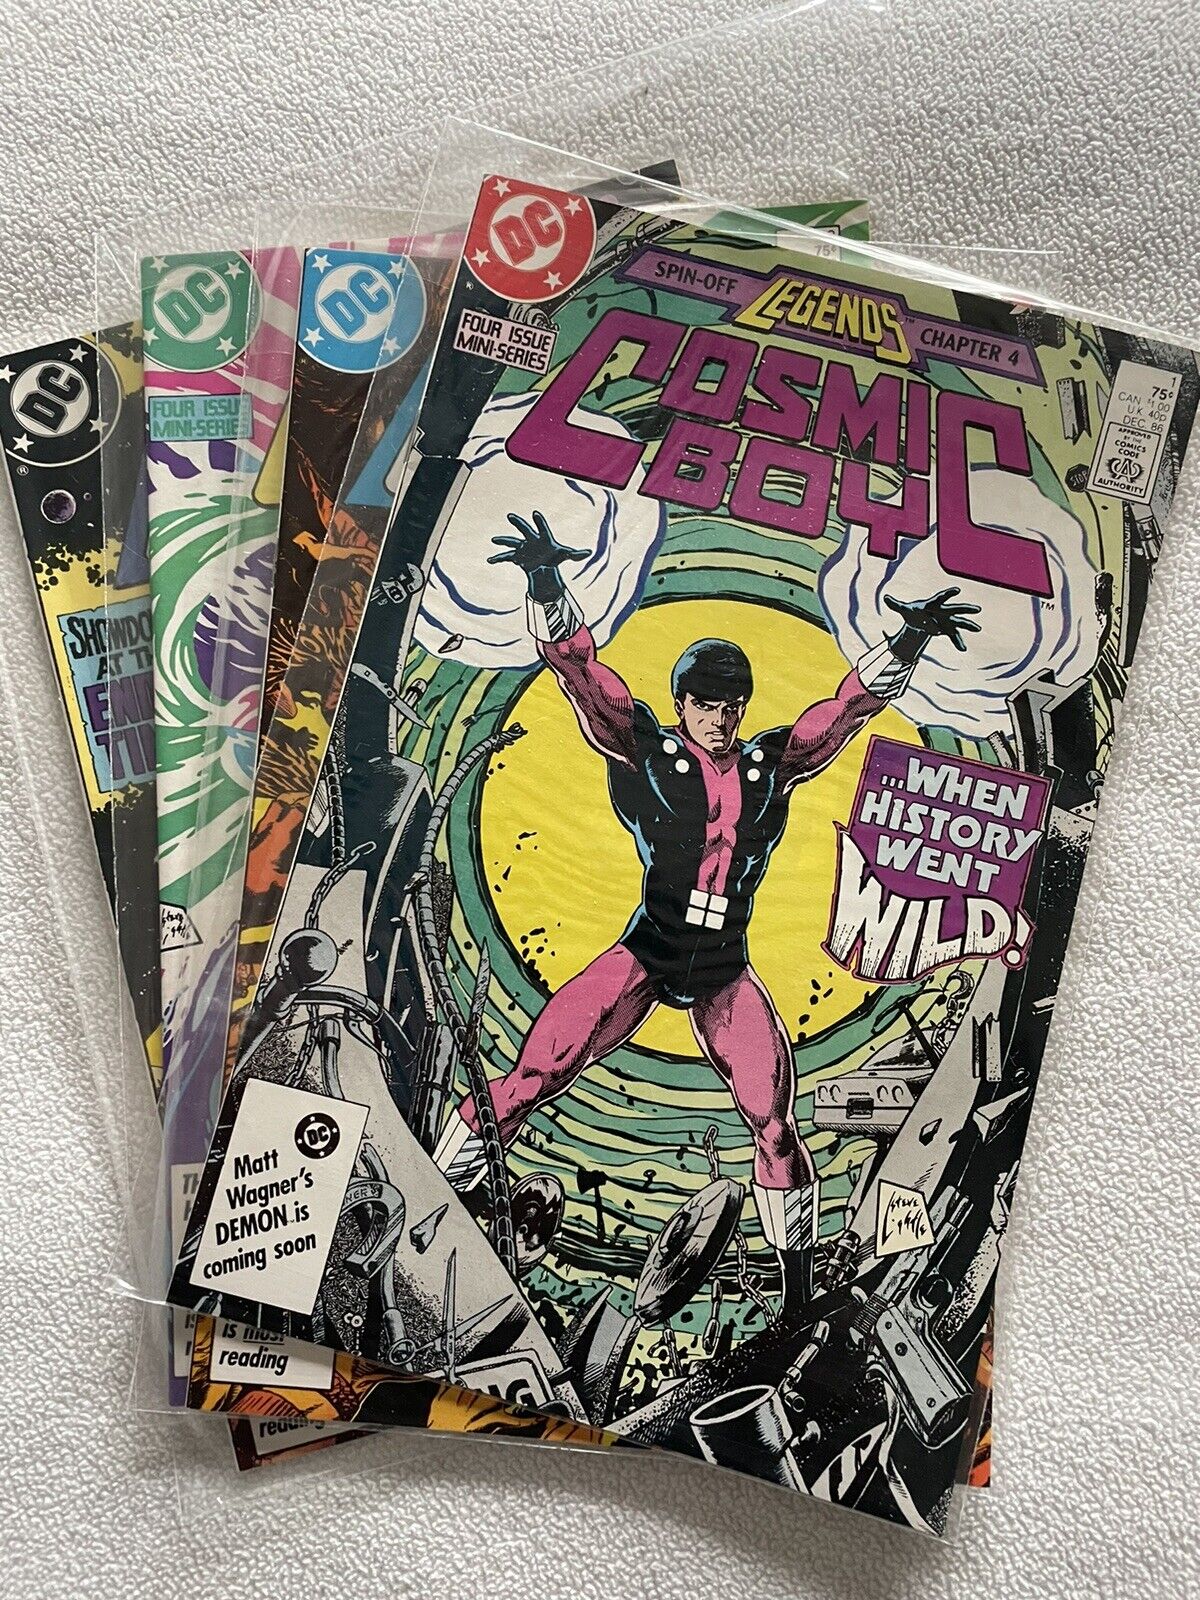 Cosmic Boy (DC, 1986) #1,2,3,4 VF